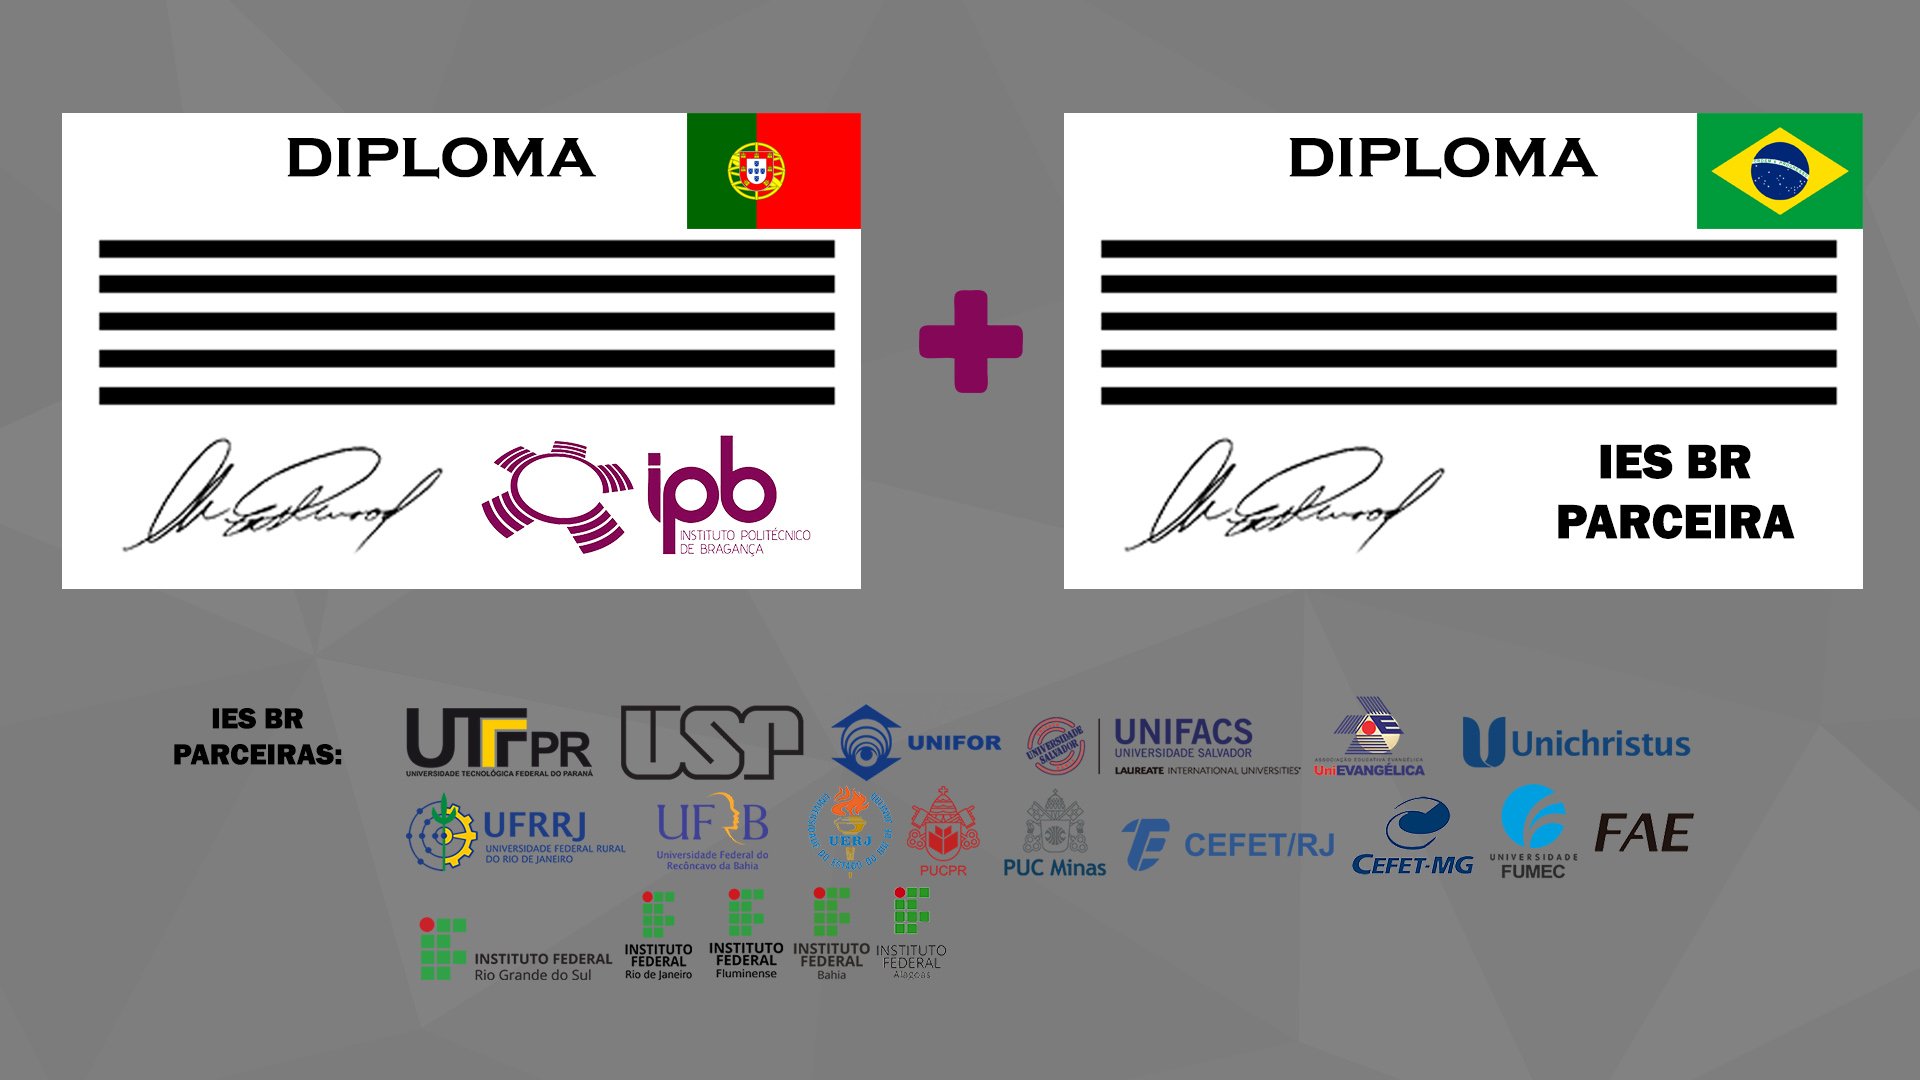 Imagem com dois diplomas, um do IPB de Portugal e outro de uma Instituição de Ensino Superior Brasileira